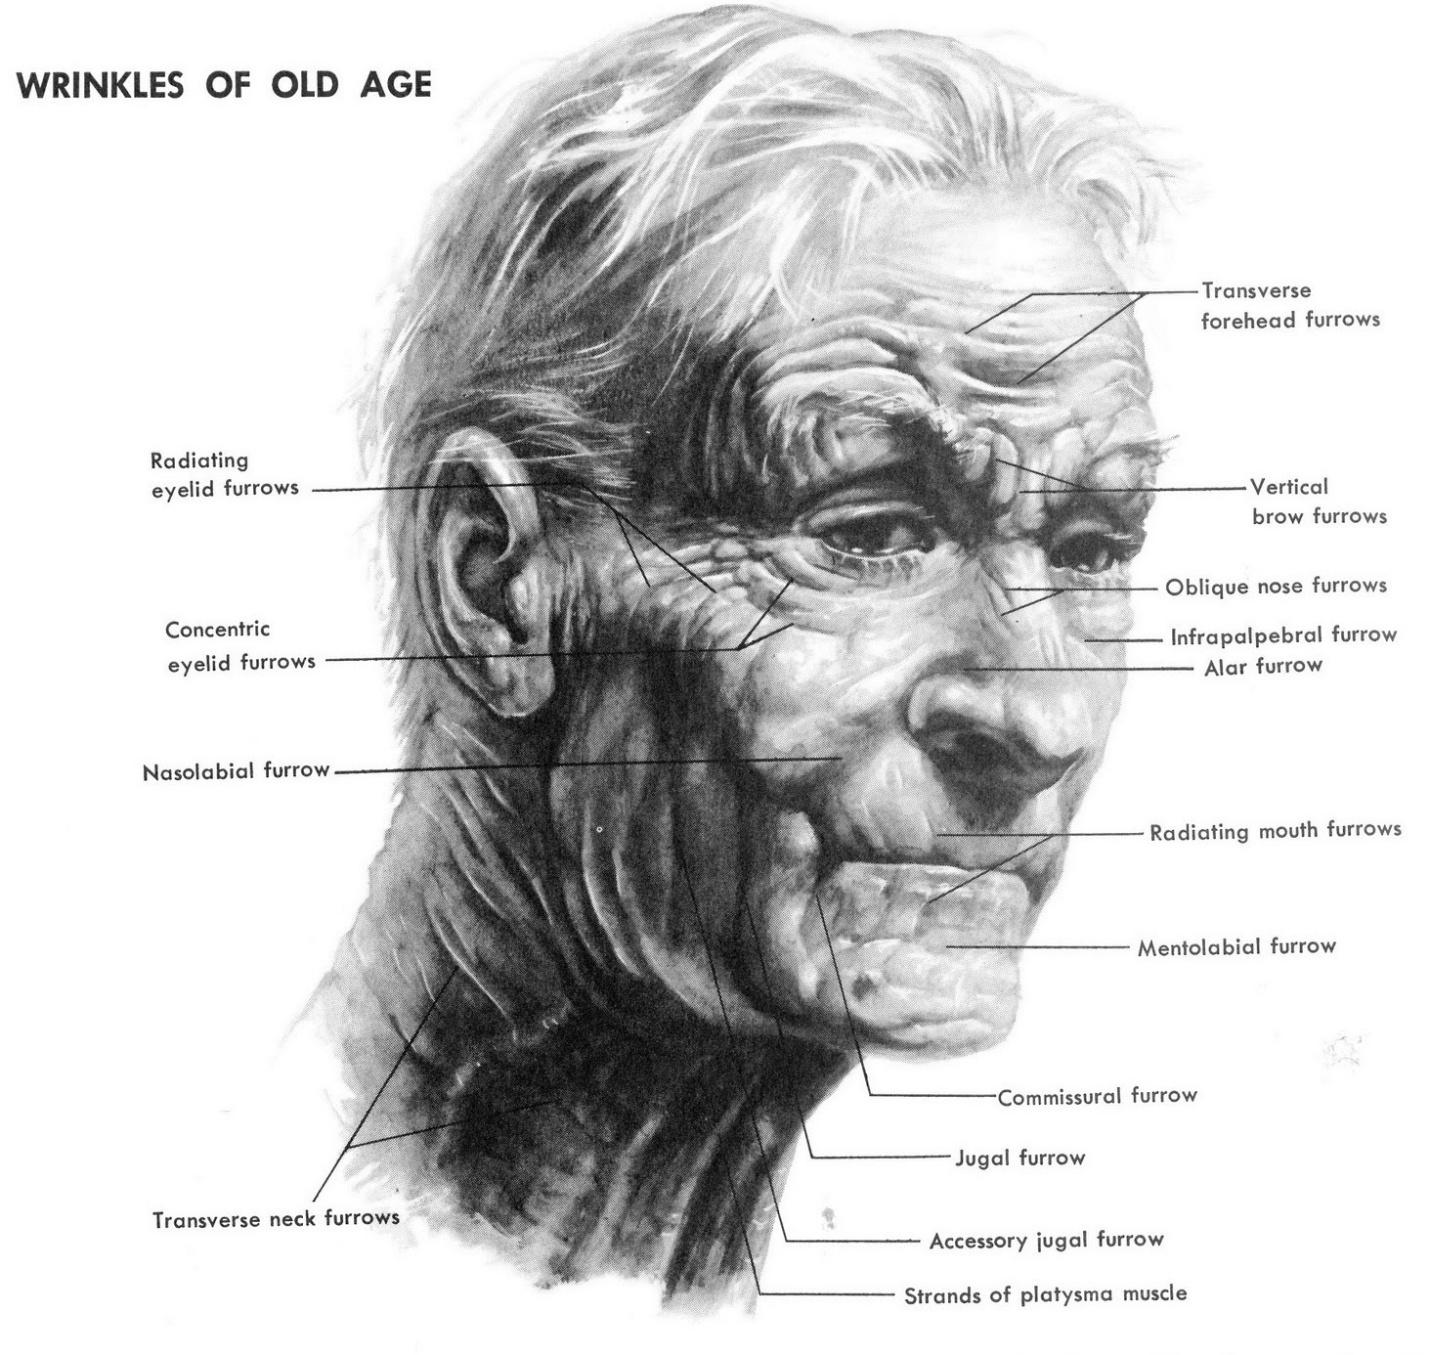 Vẽ người già là một kỹ năng muôn thuở cho các họa sĩ. Hãy xem qua hình ảnh này để cùng tìm hiểu về cách triển khai và khắc họa bề ngoài cũng như cảm xúc của người già trên trang giấy.